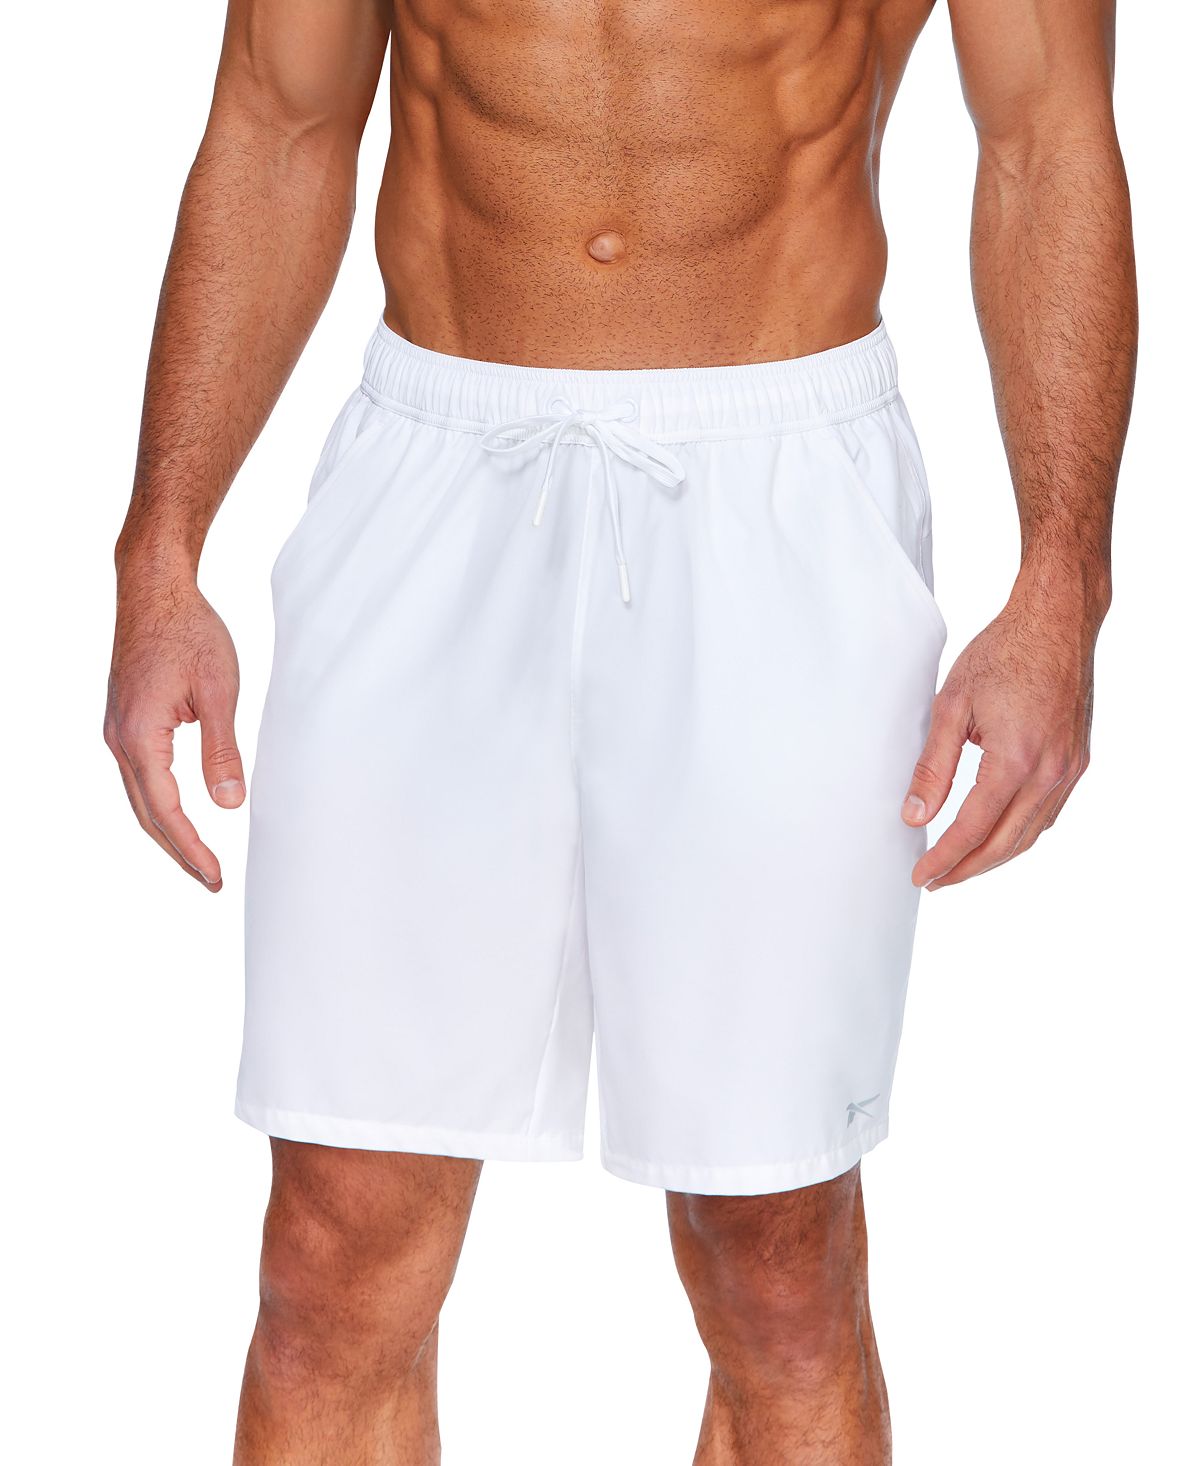 Мужские шорты для волейбола для спортсменов 9 дюймов Reebok цена и фото